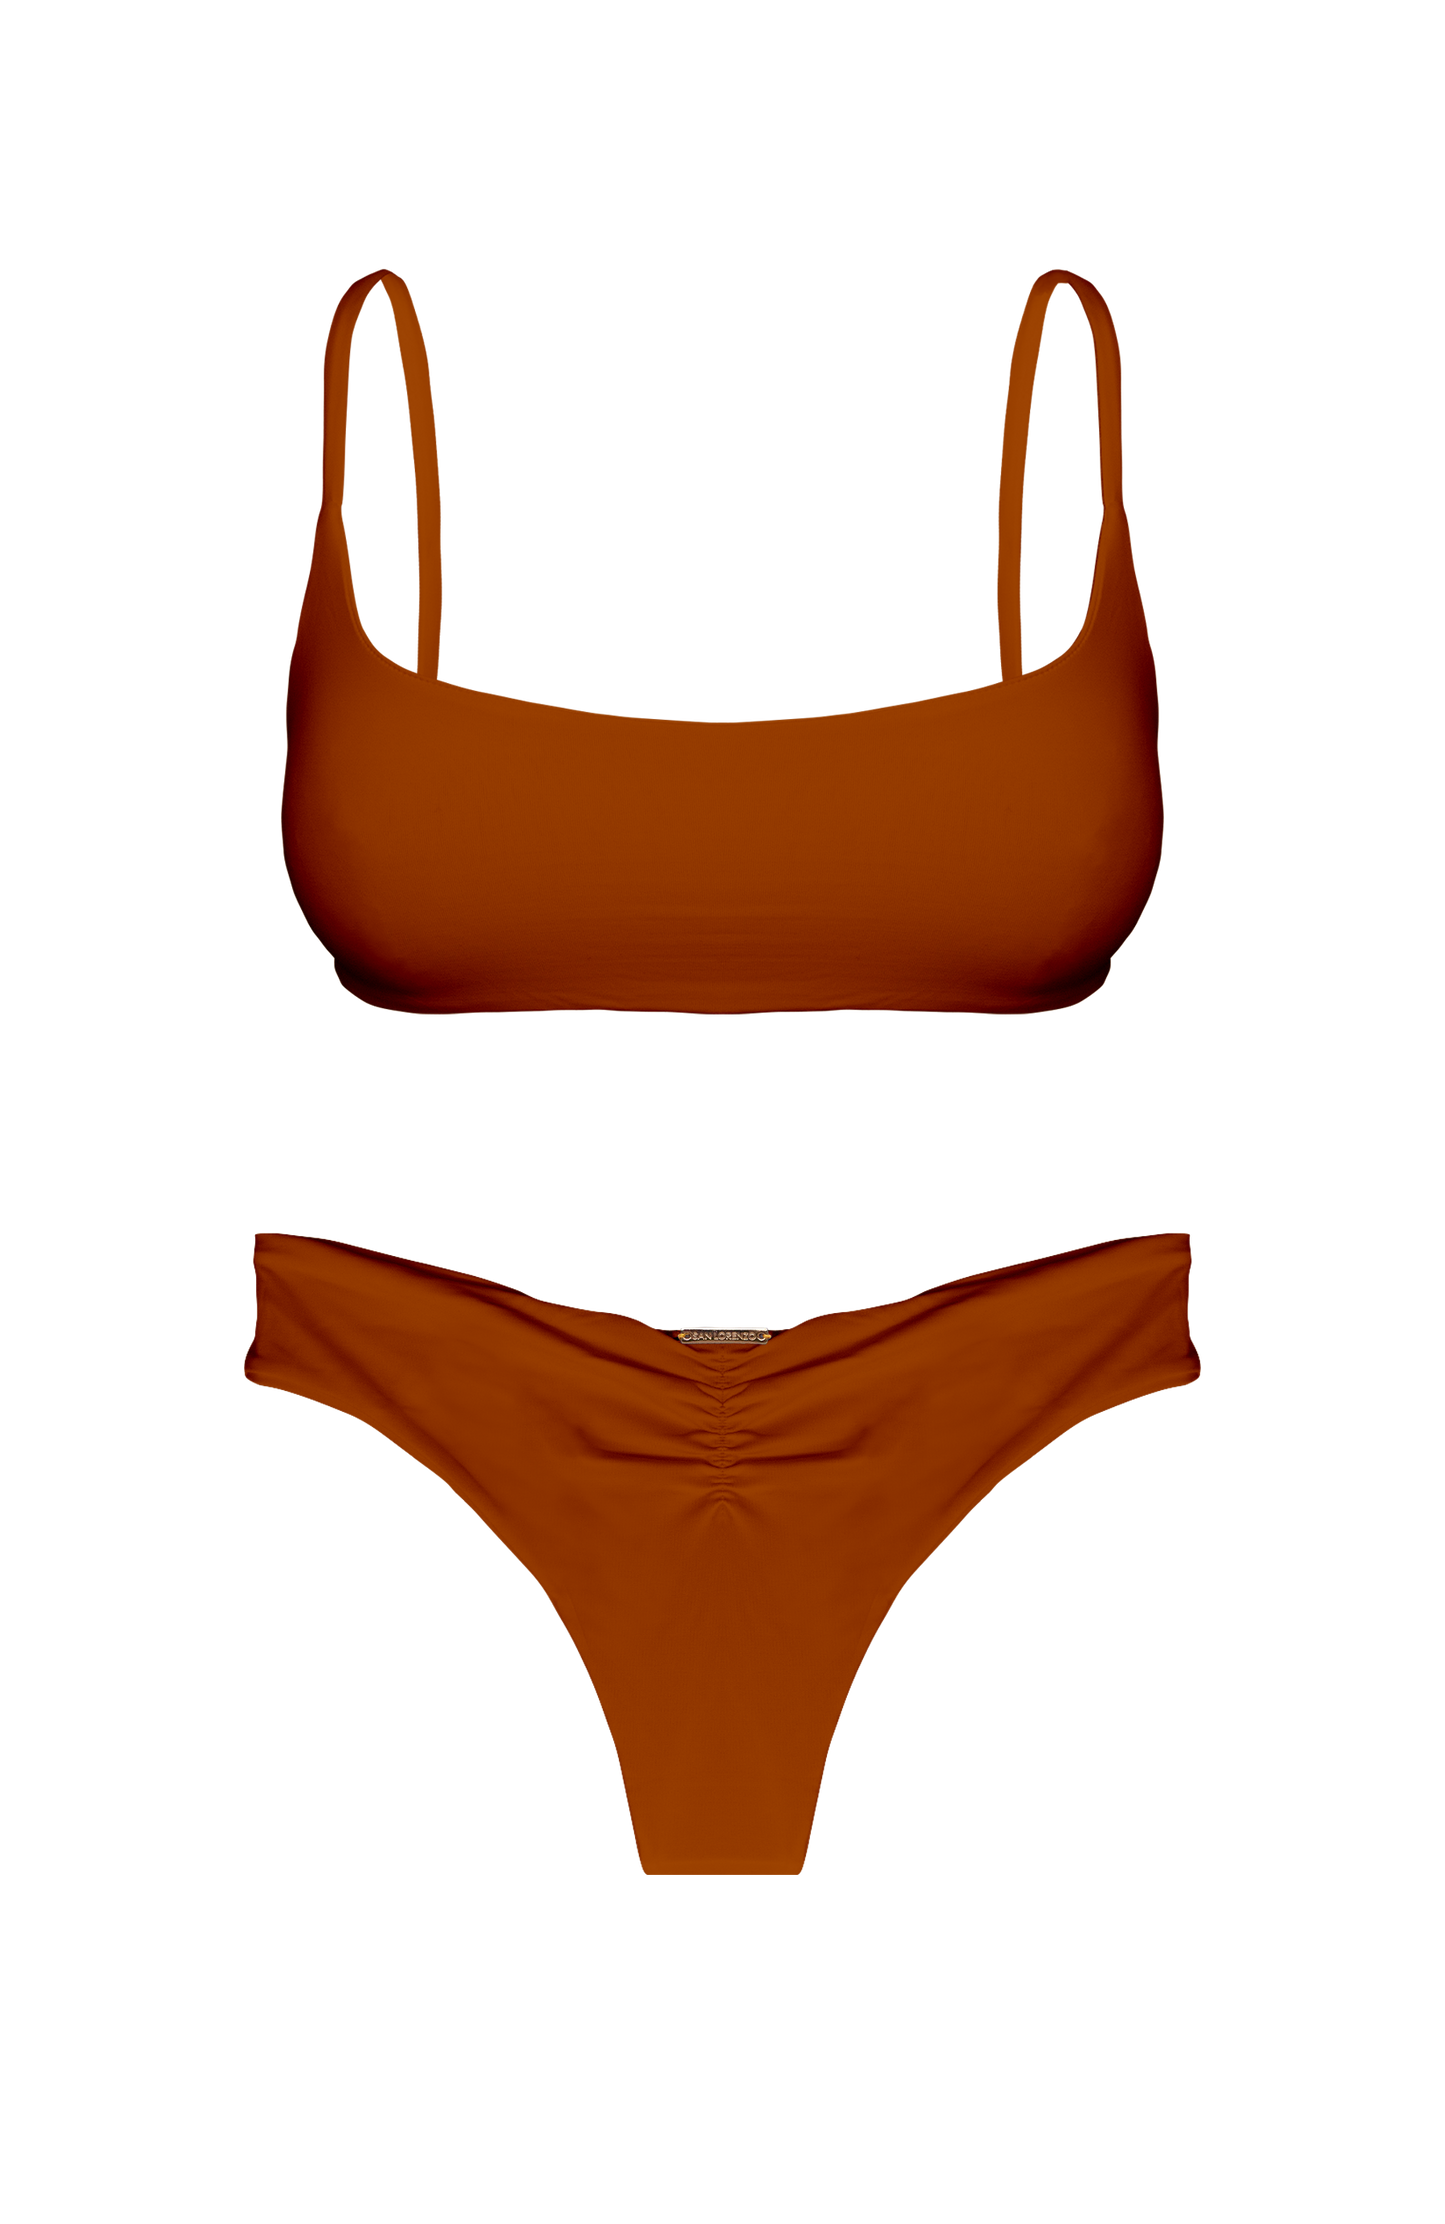 TAHITI MANA Persimmon Sport Cross Back Bikini Top